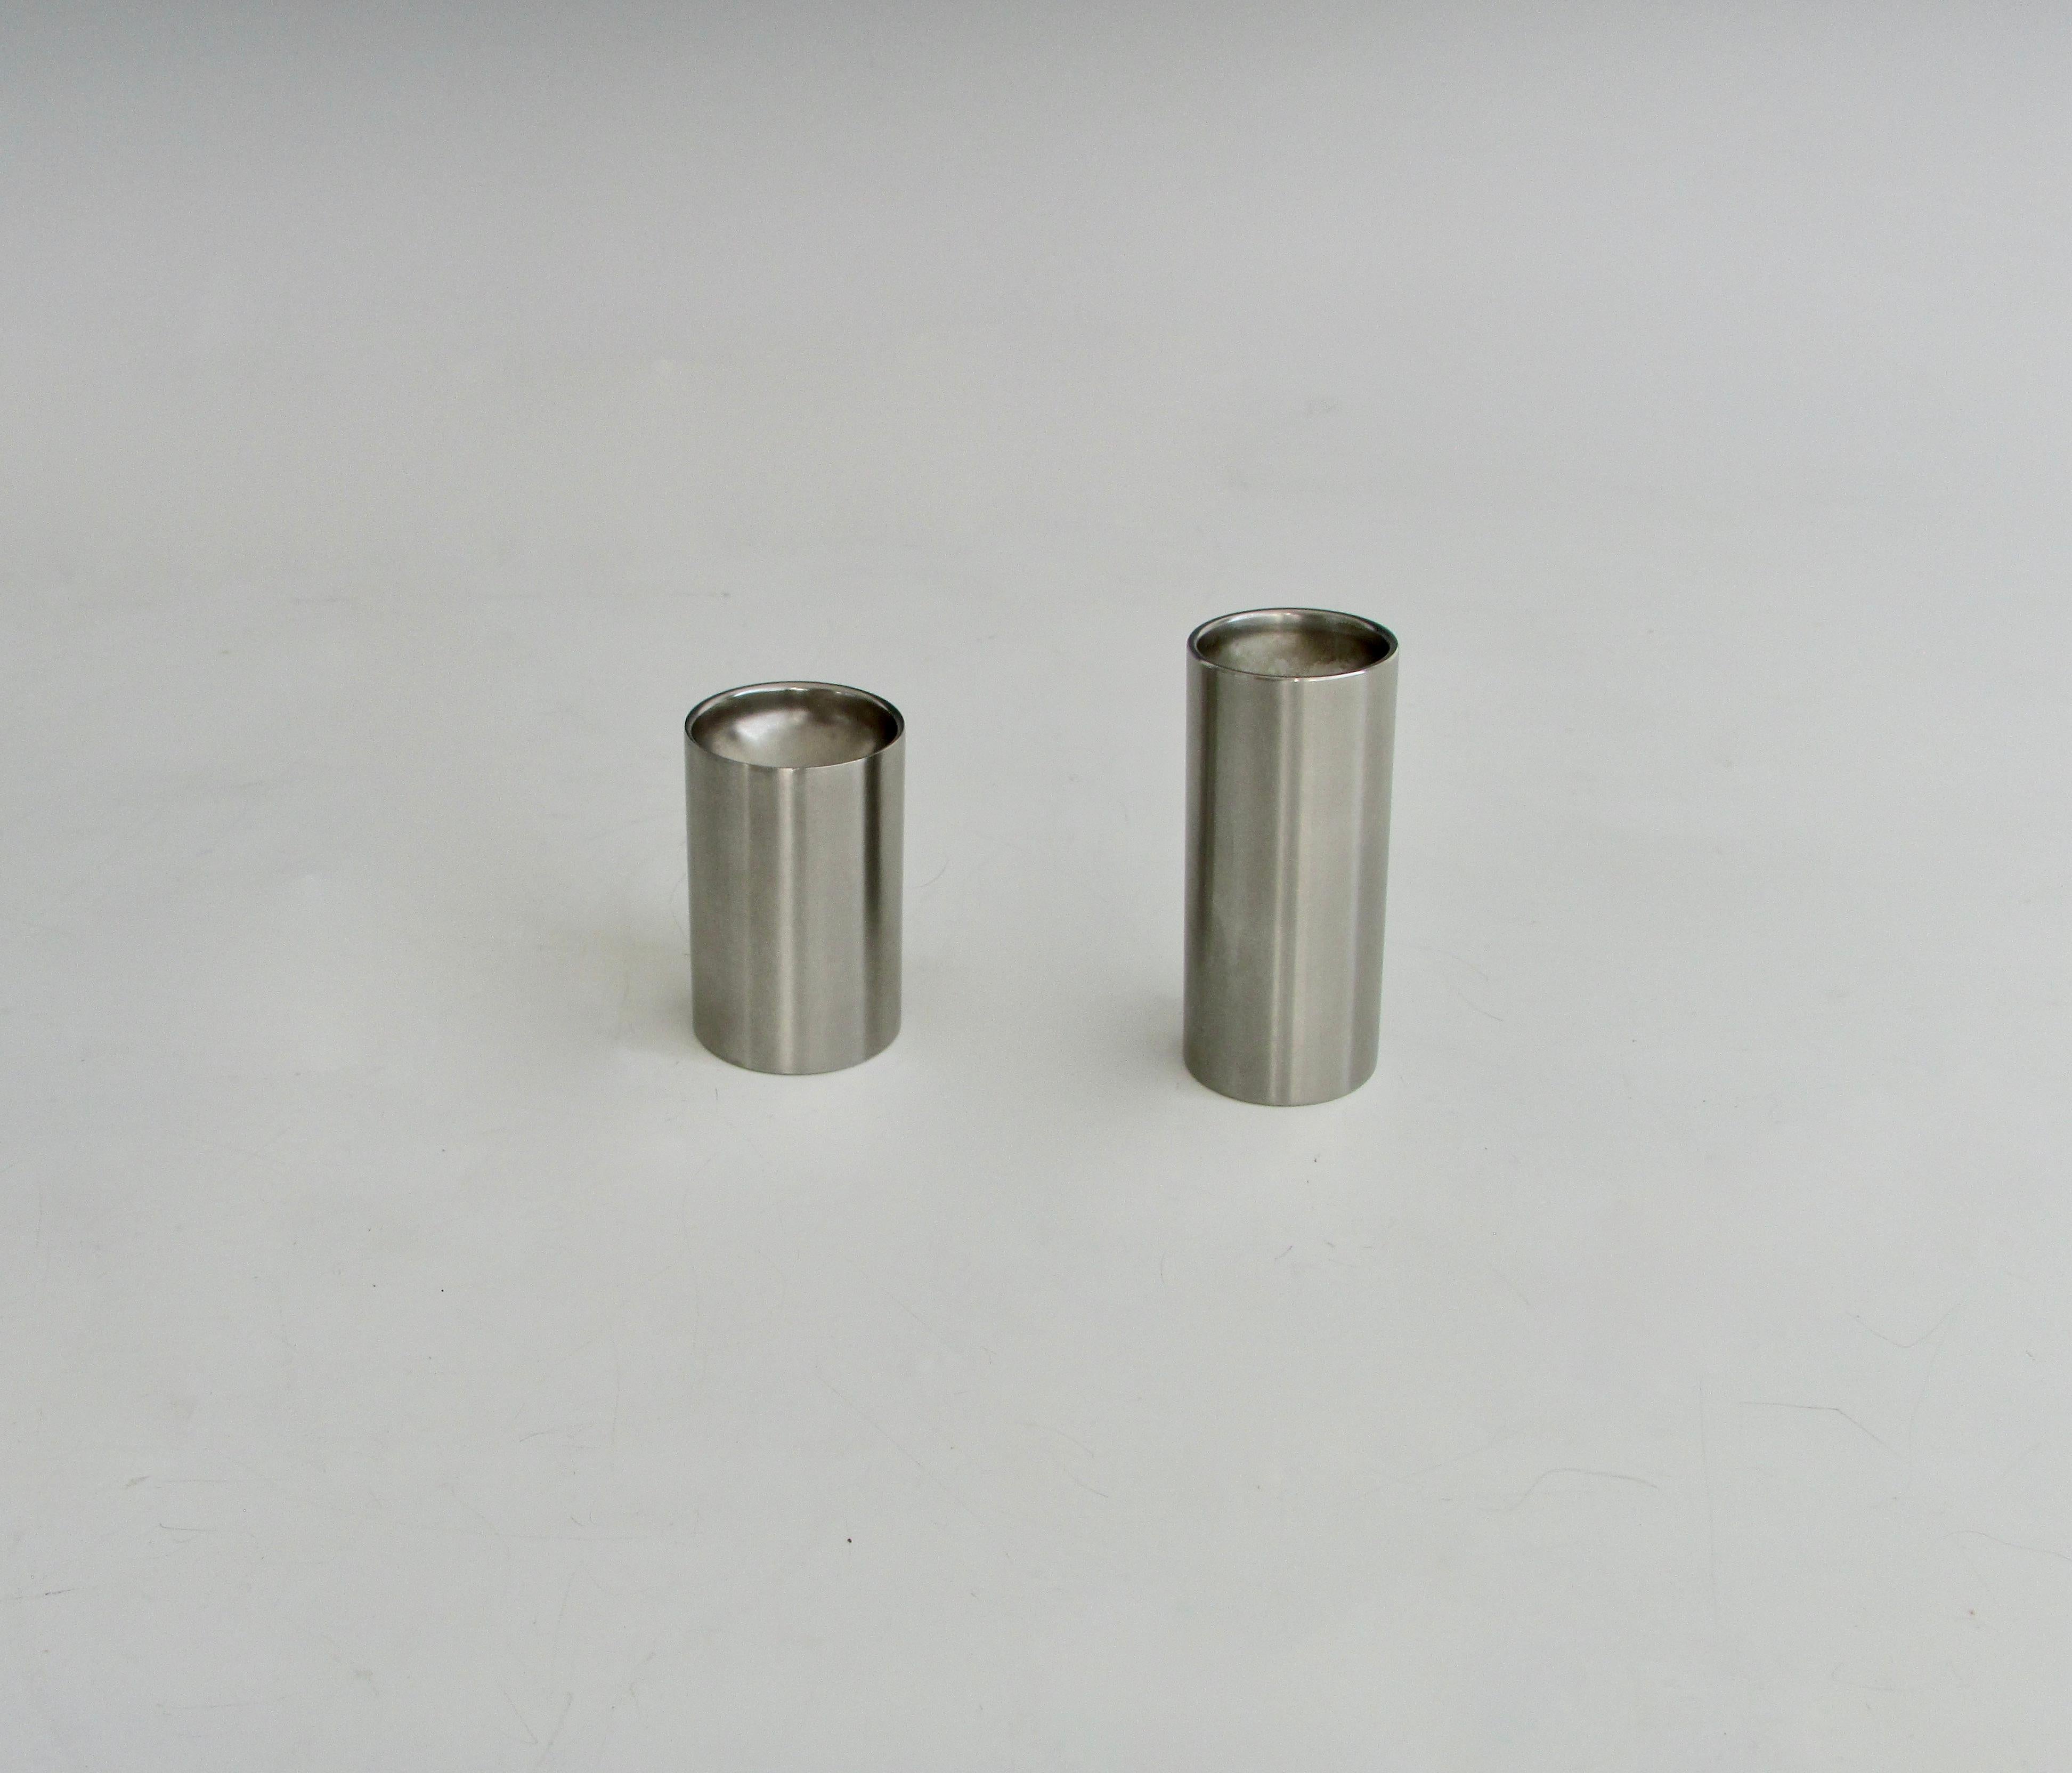 Arne Jacobsen for Stelton Stainless Steel Cylinder Salt Pepper Shakers Denmark 2